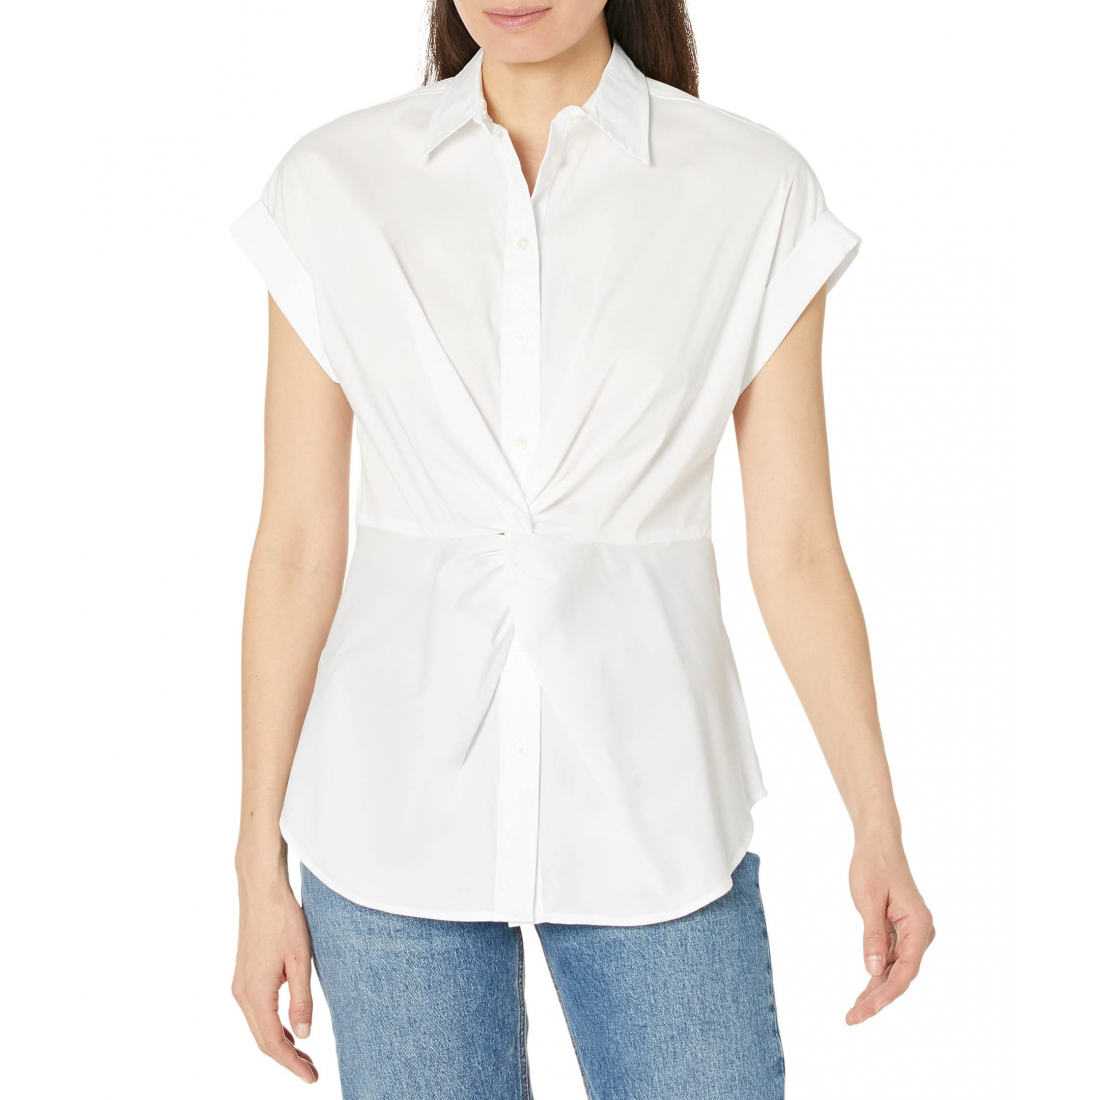 Women's 'Twist-Front' Short sleeve shirt